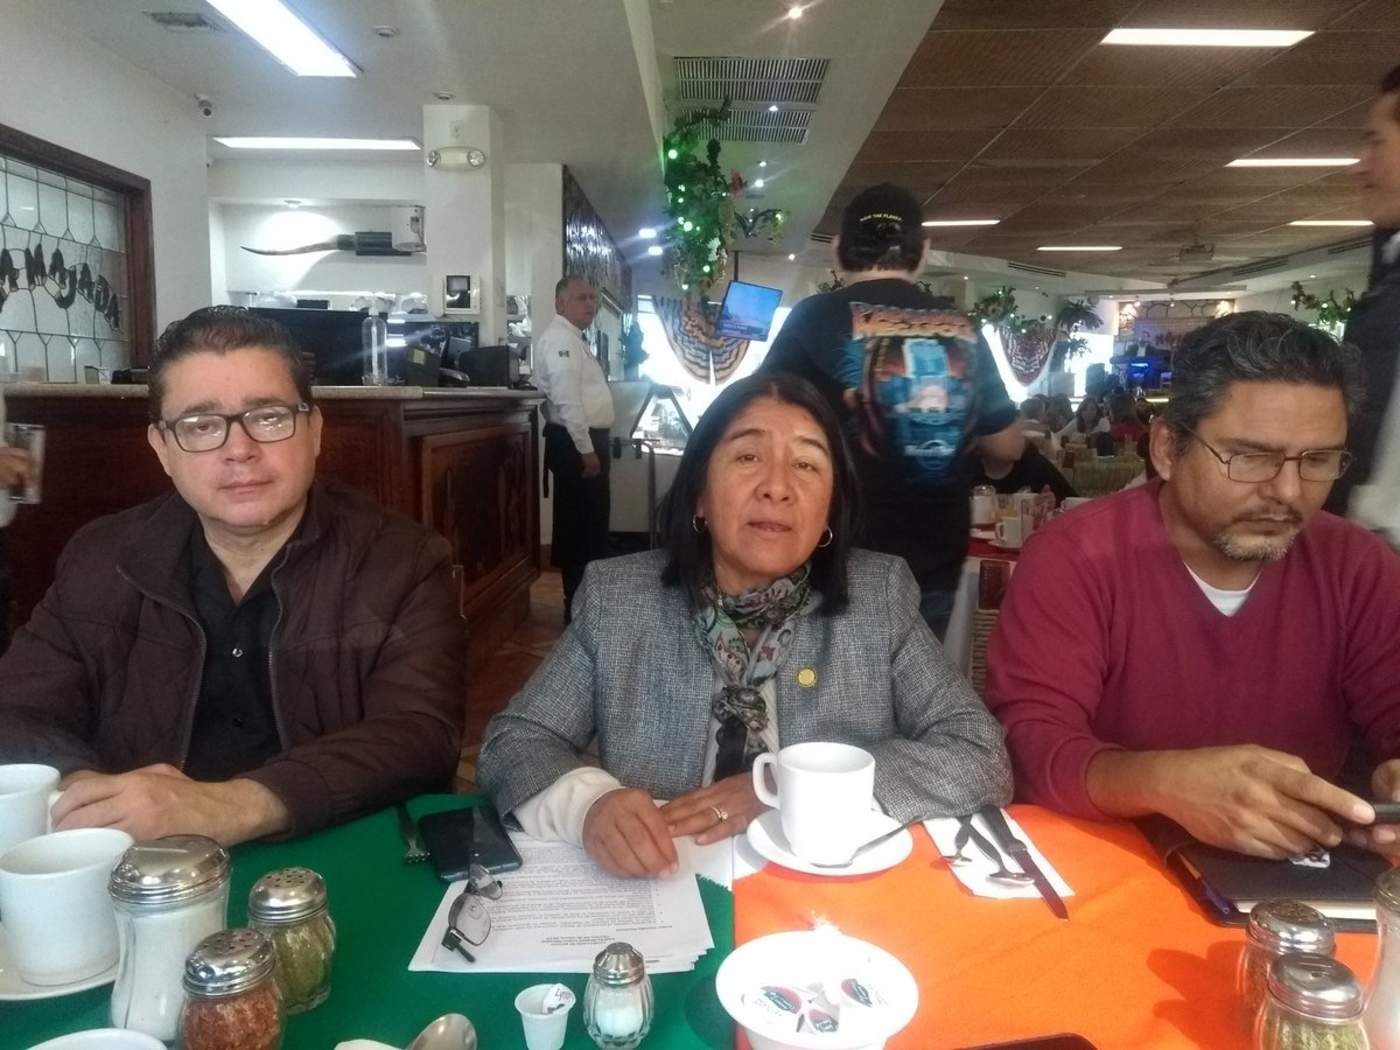  La dirigente de Morena estuvo este sábado en Torreón acompañada por Carlos César Martínez y Manuel Pacheco, integrantes del Comité Ejecutivo Estatal además del regidor Ignacio Corona.  (EL SIGLO DE TORREÓN) 